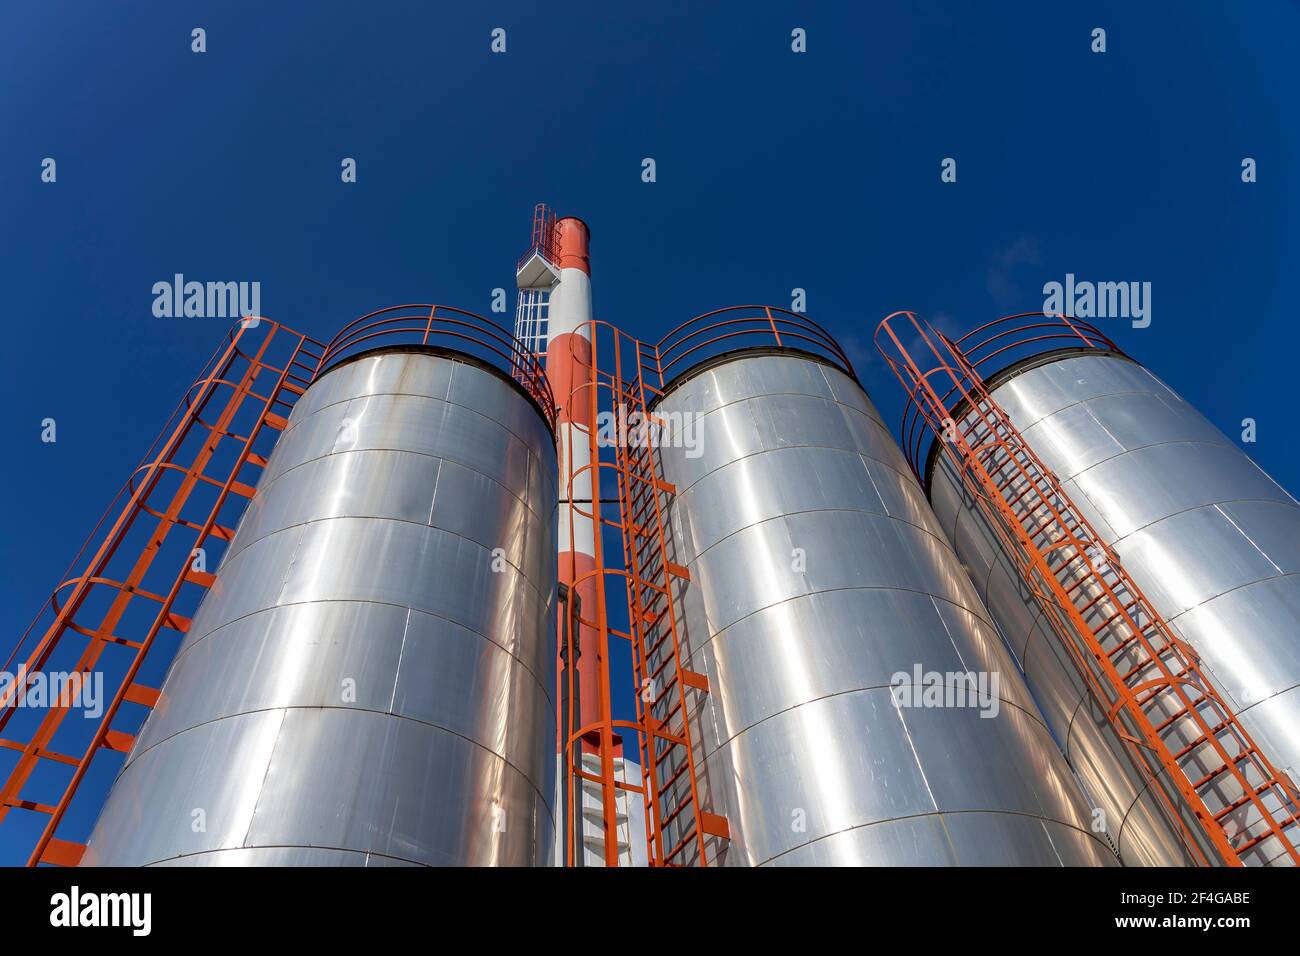 Industrielle Lagertanks Über Blue Sky Hintergrund. Außenansicht der Ölraffinerie mit Öllagertanks und Industriekamin gegen den blauen Himmel. Stockfoto